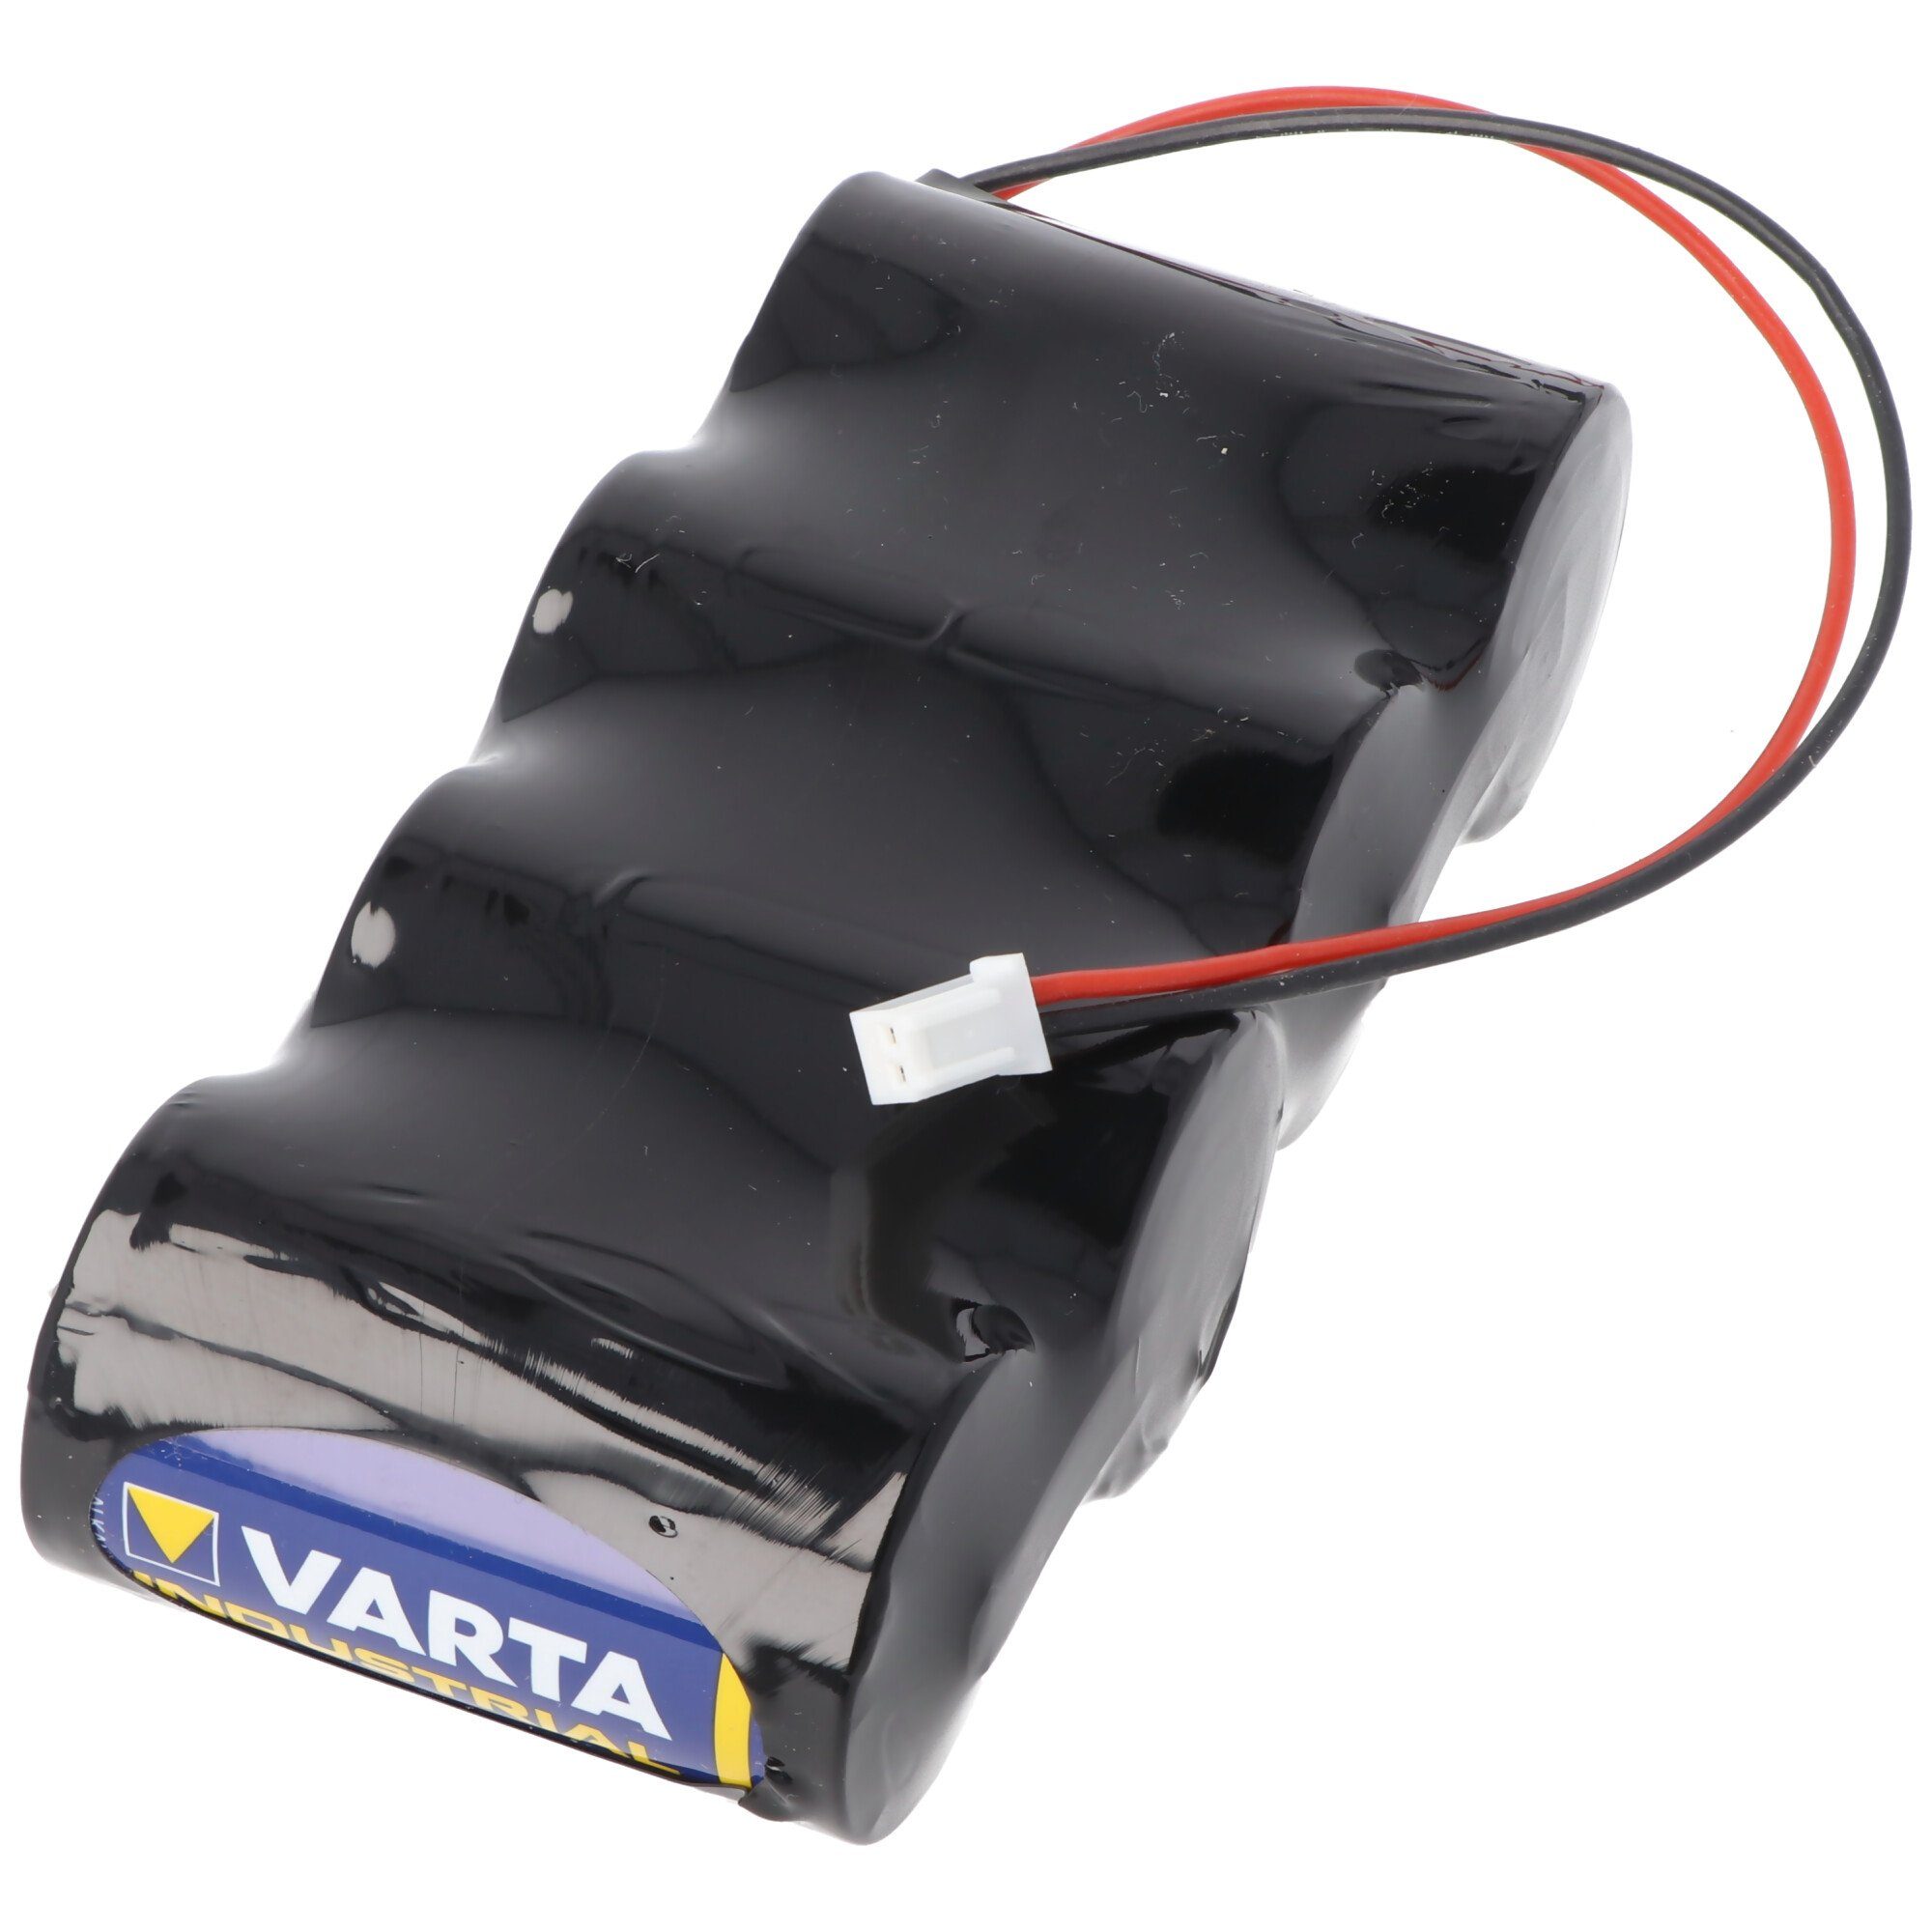 VARTA Varta 6 Volt 6 Pack Volt mit Batterie Batterie Stecker Alkaline Kabel und